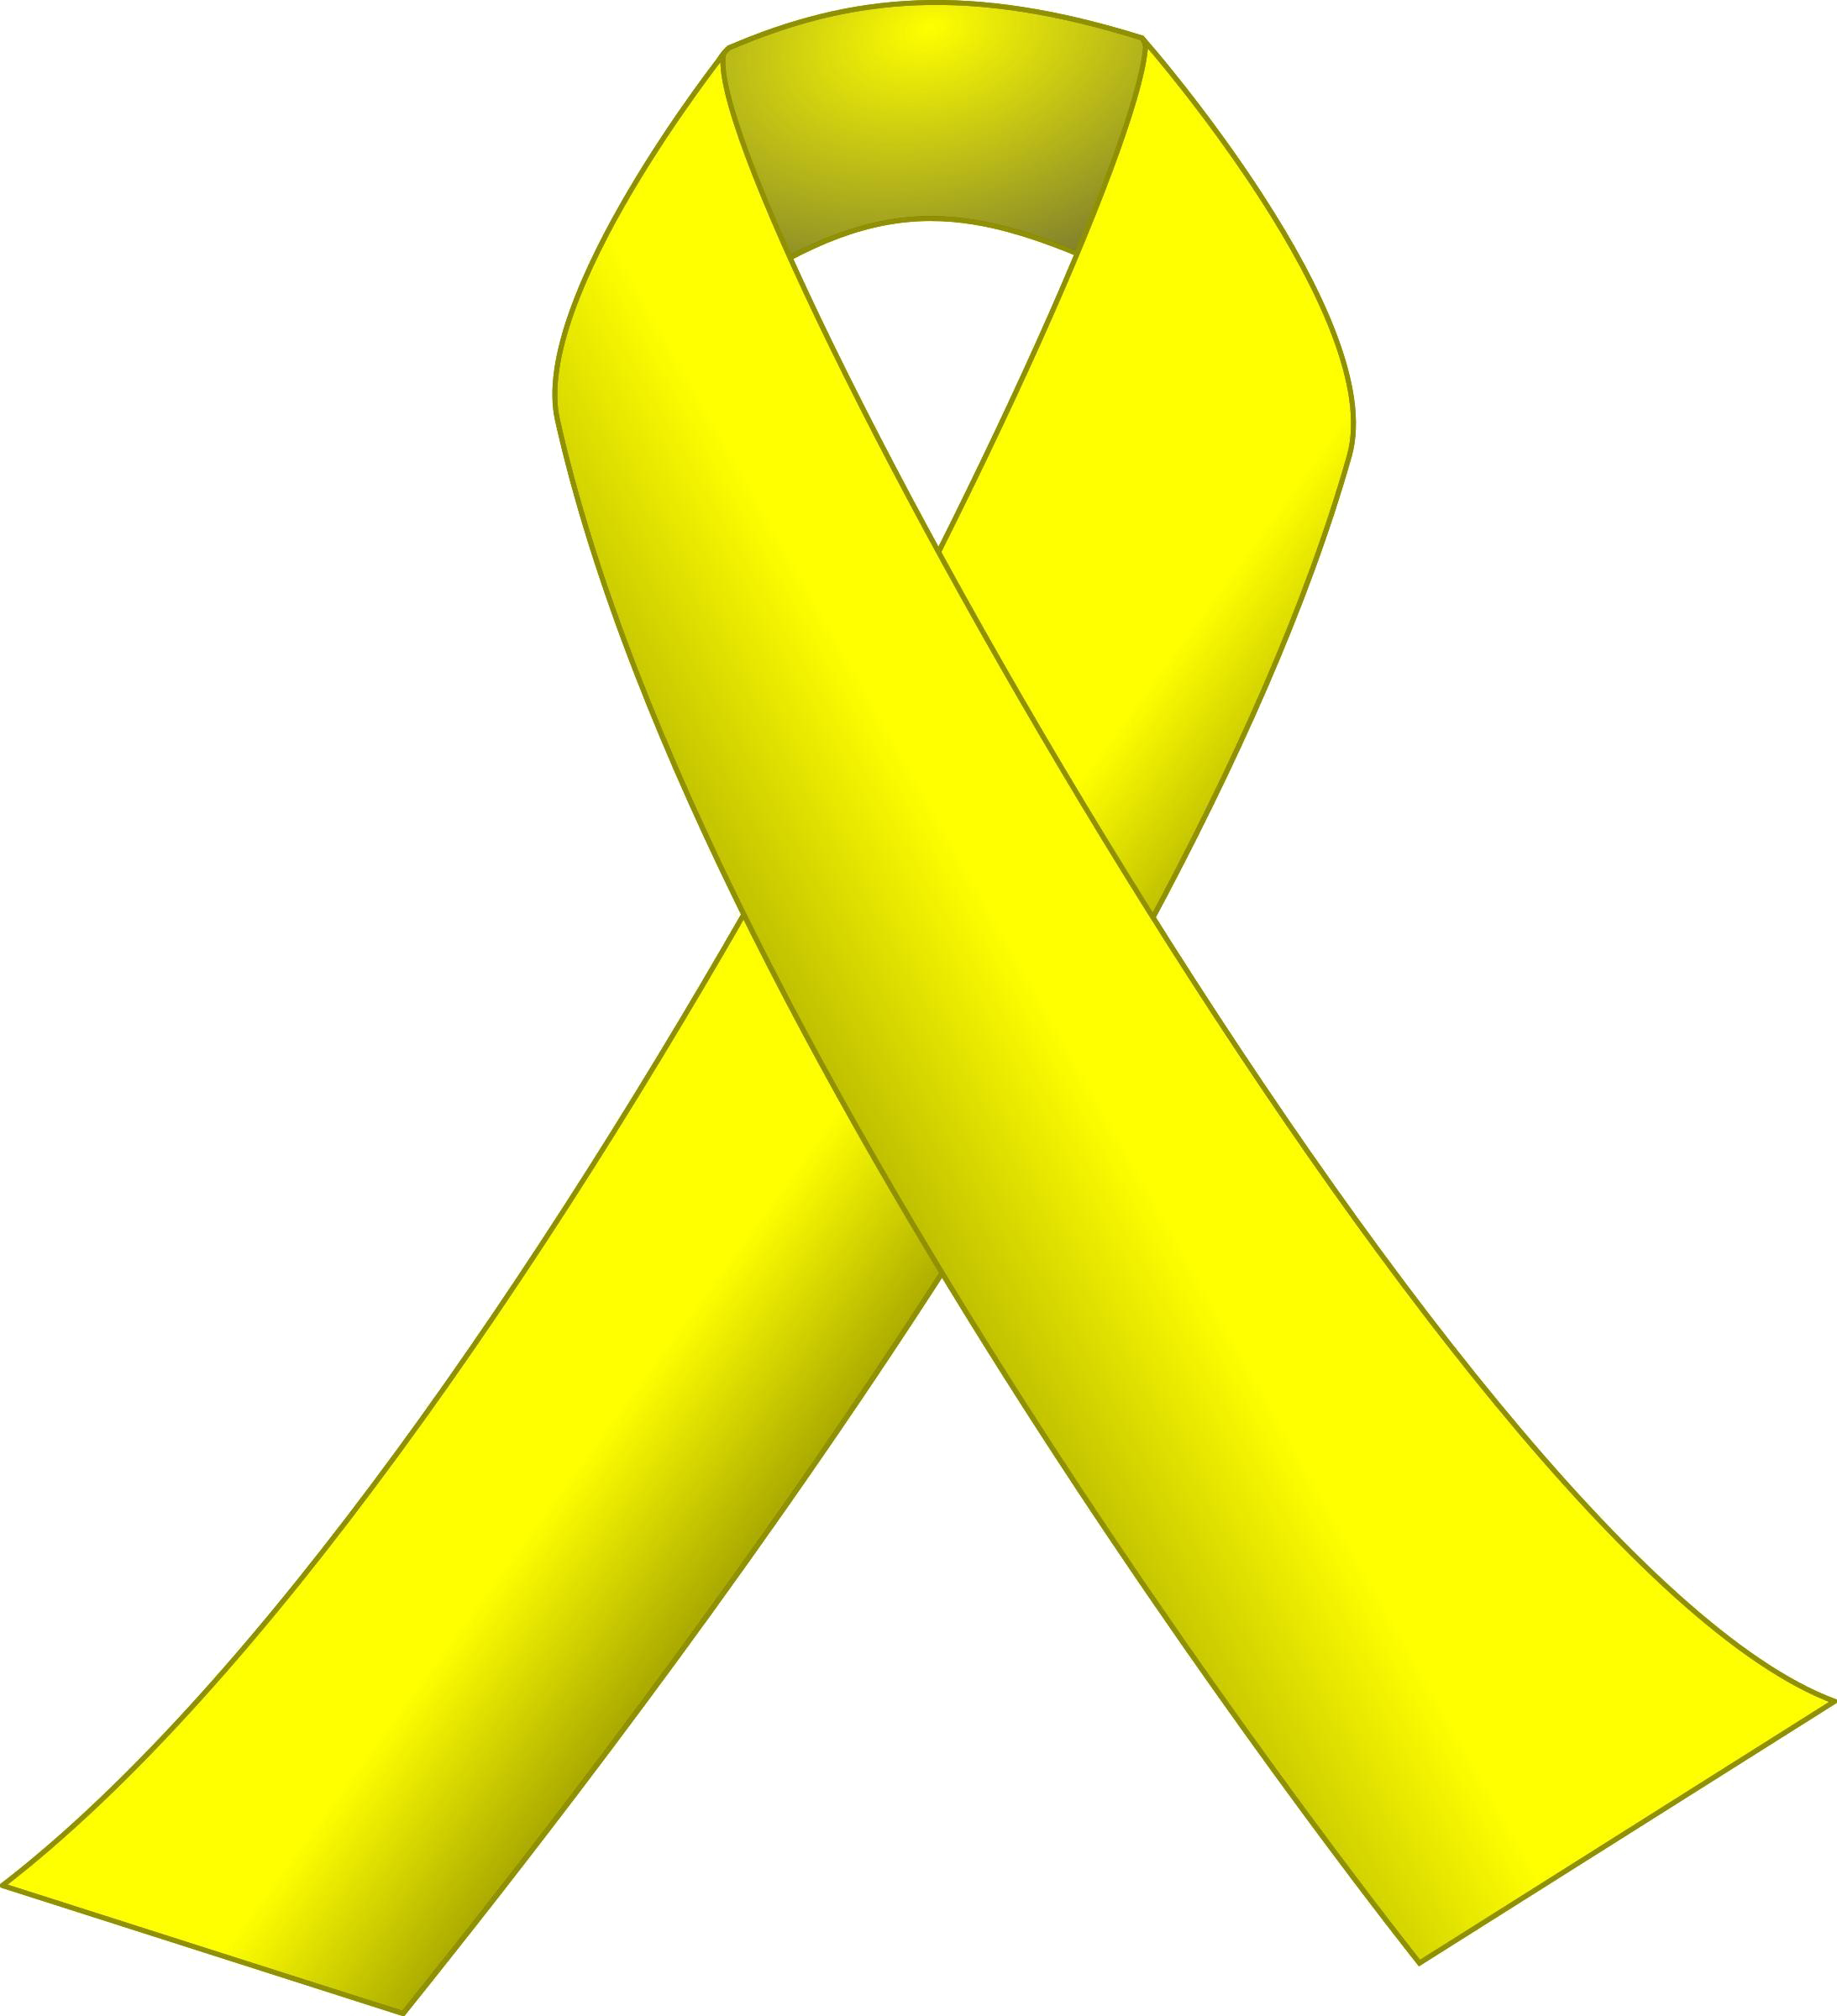 Image de fond jaune ruban PNG image